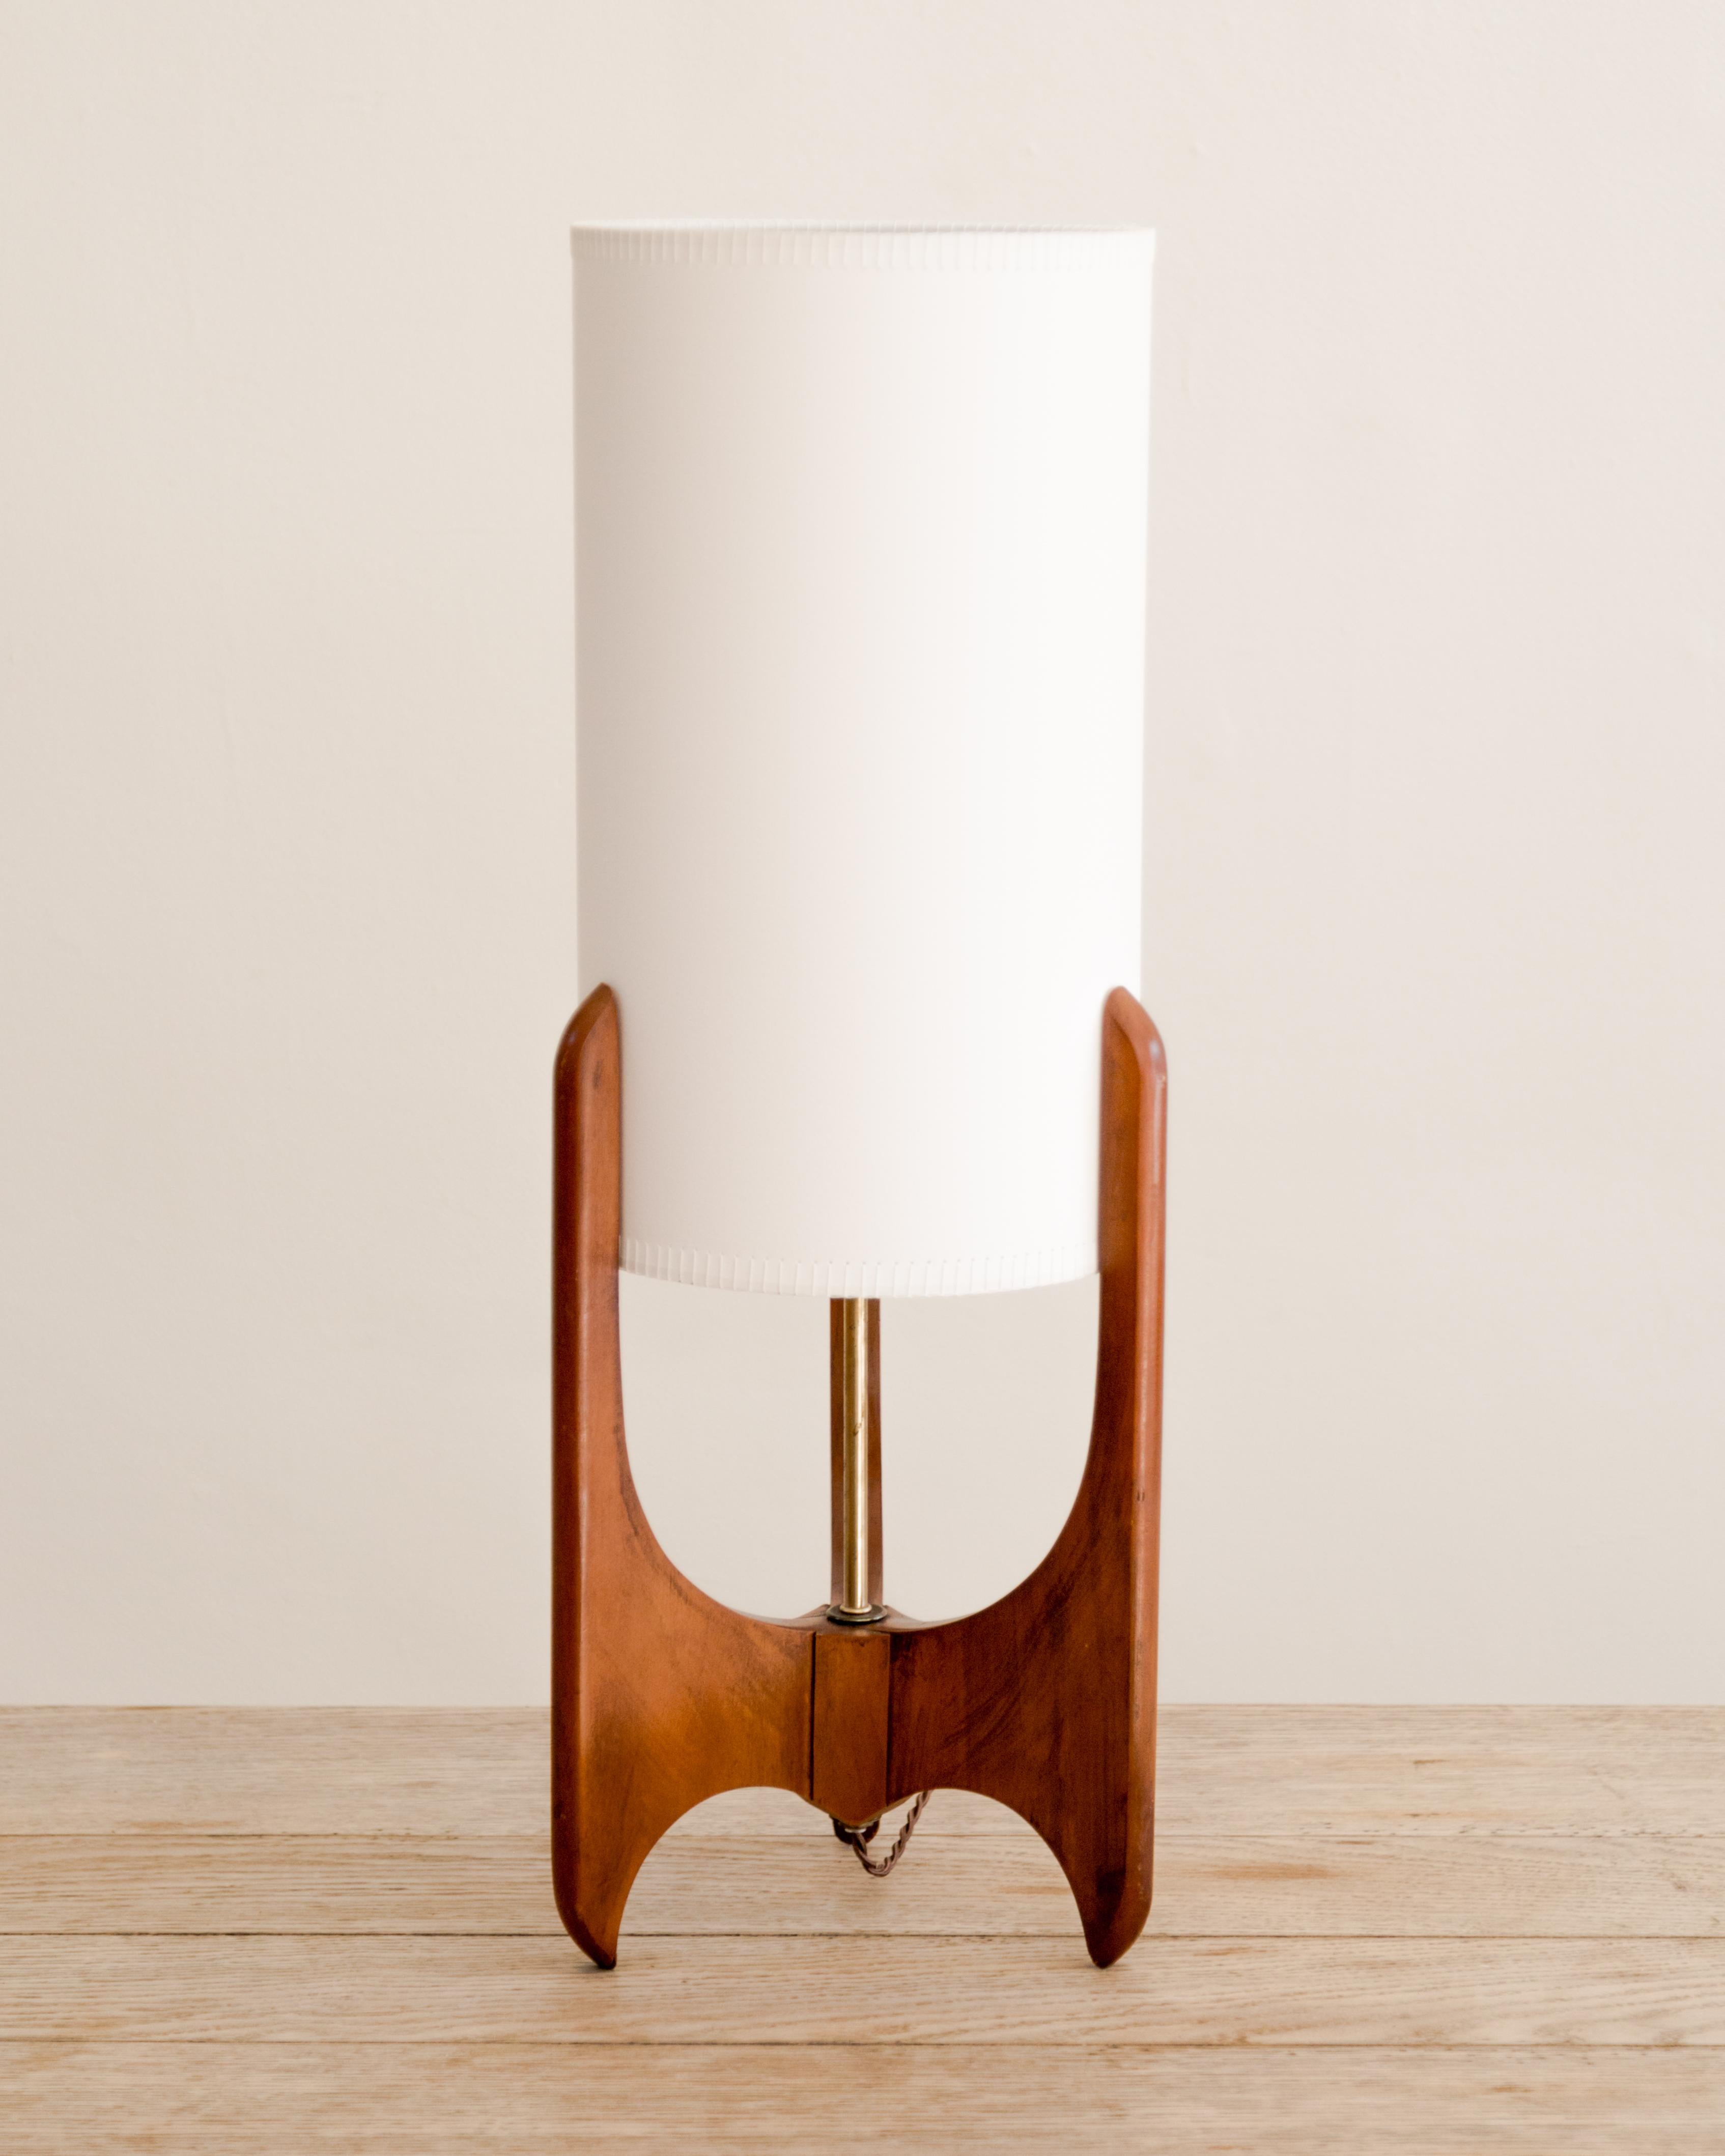 Lampe de table rétro américaine avec base en noyer et abat-jour cylindrique en papier artisanal avec coutures fouettées, vers les années 1960.